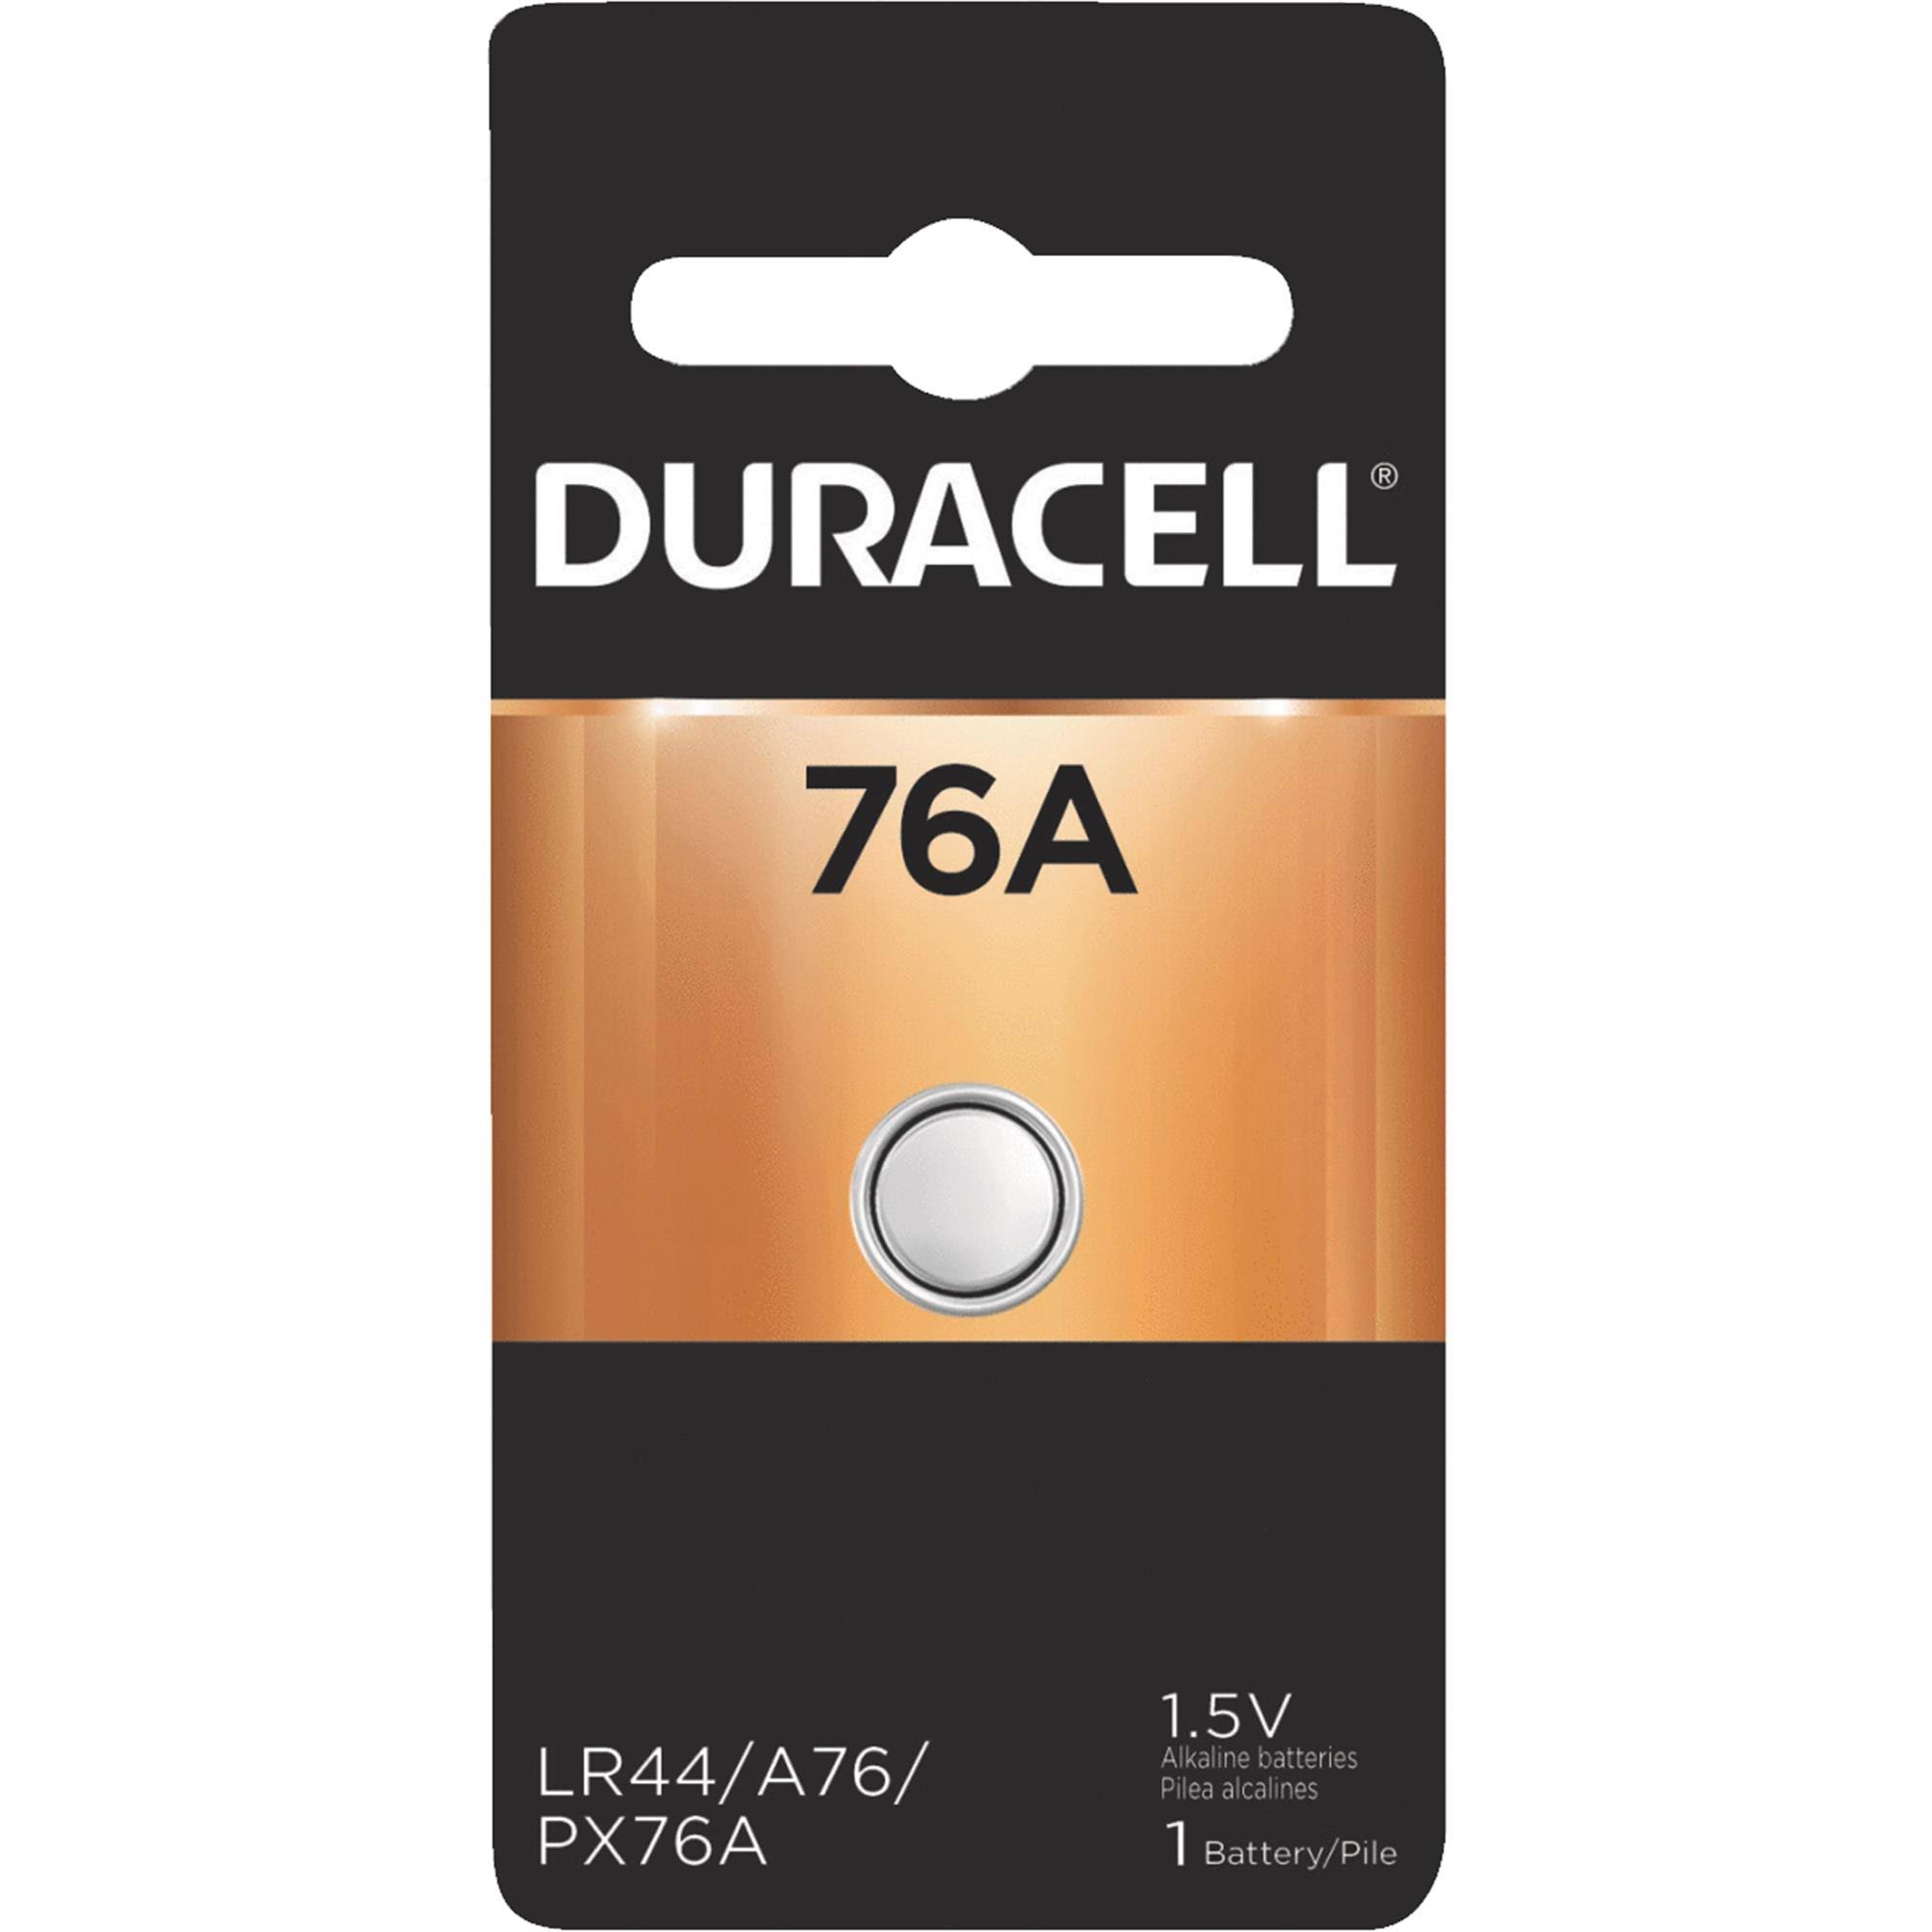 Duracell Medical Battery - 1.5V